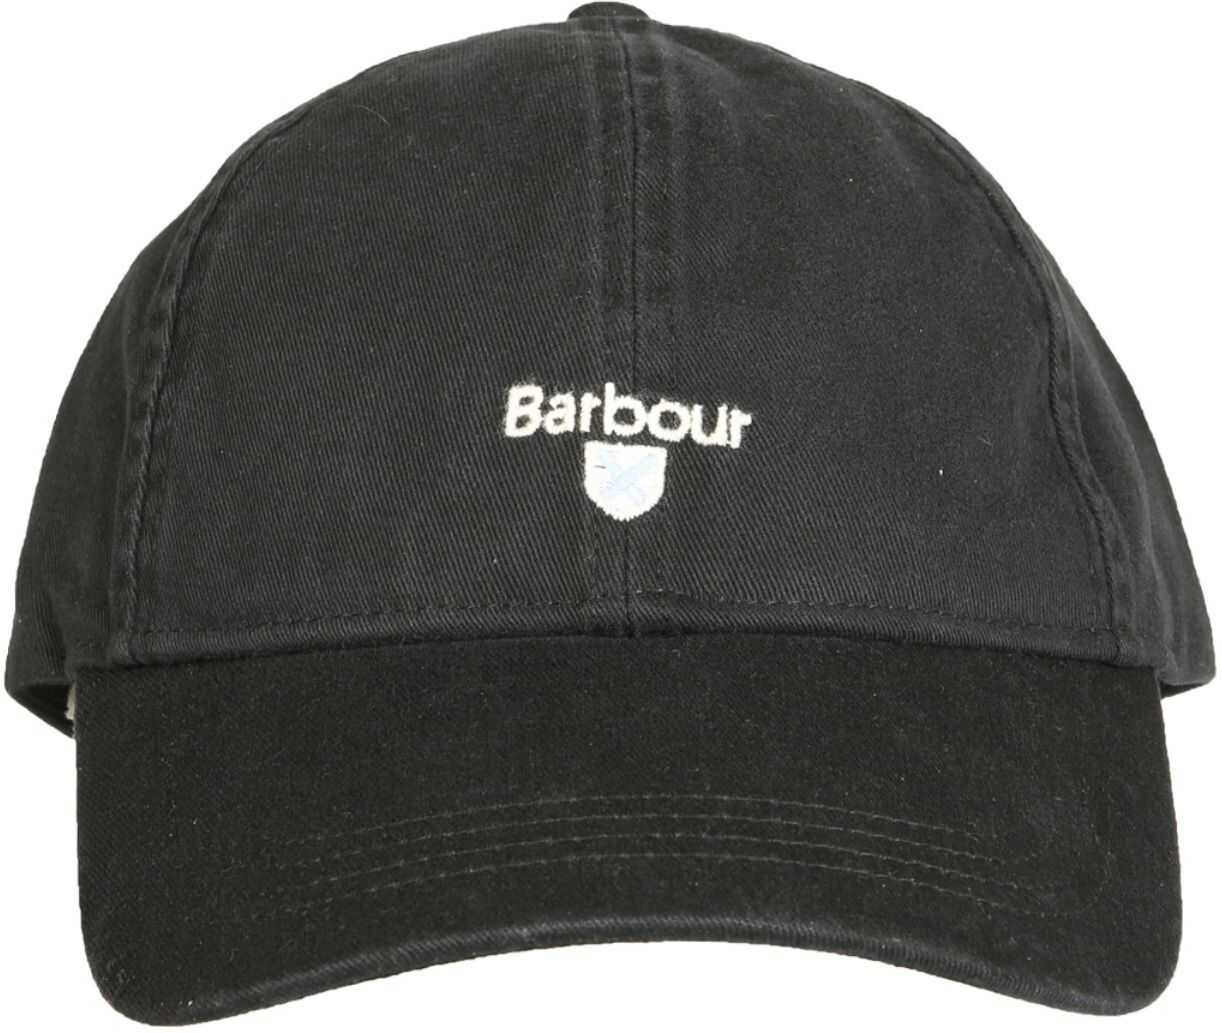 Barbour Baseball Cap BLACK